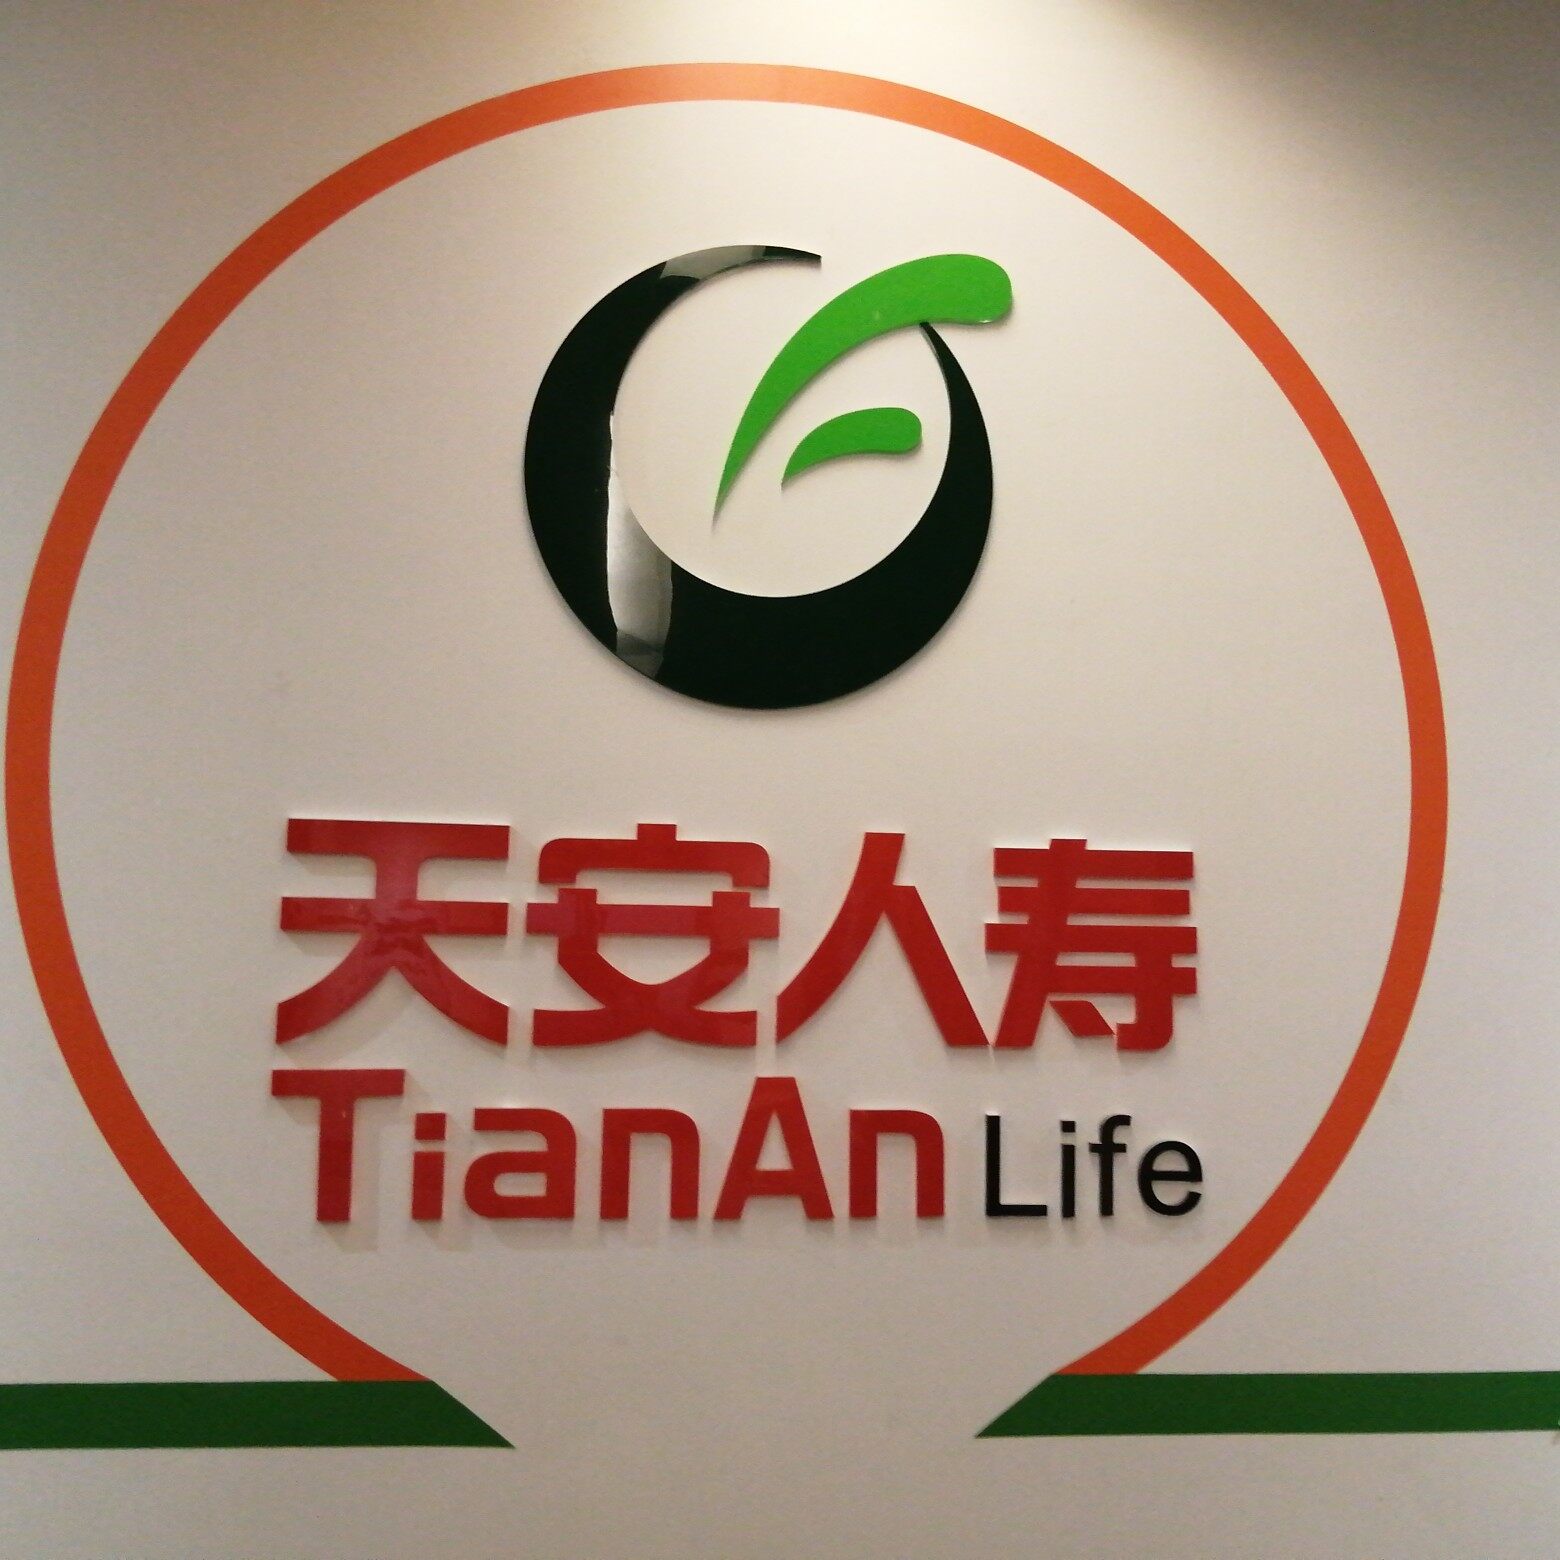 天安人寿保险股份有限公司logo